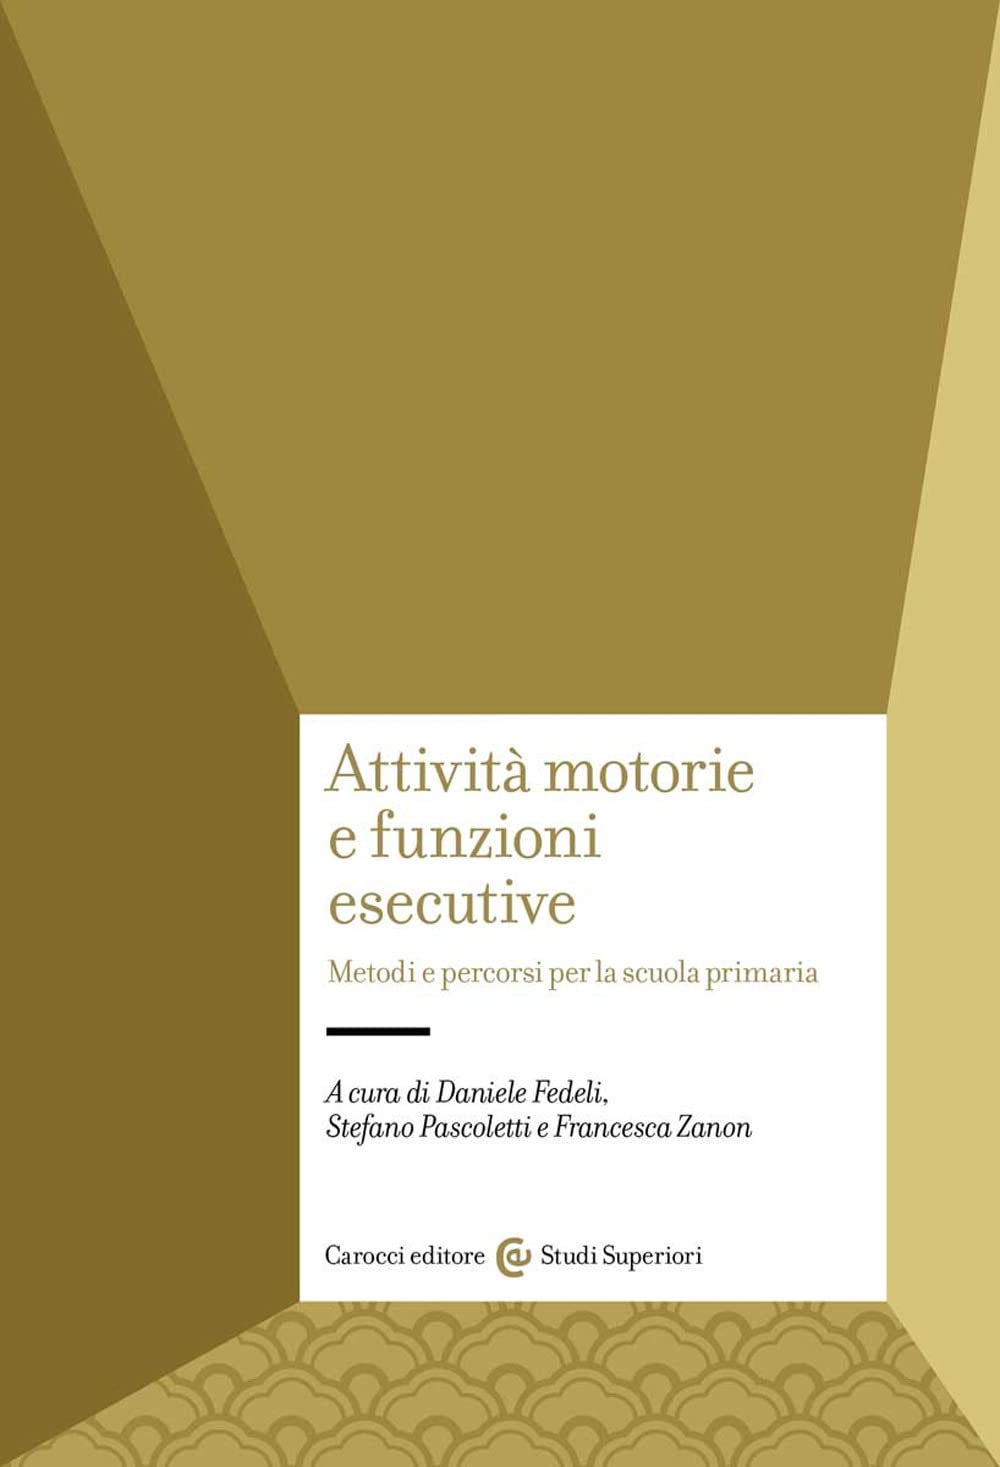 Attività motorie e funzioni esecutive (2022) di Fedeli, Pascoletti e Zanon – Recensione